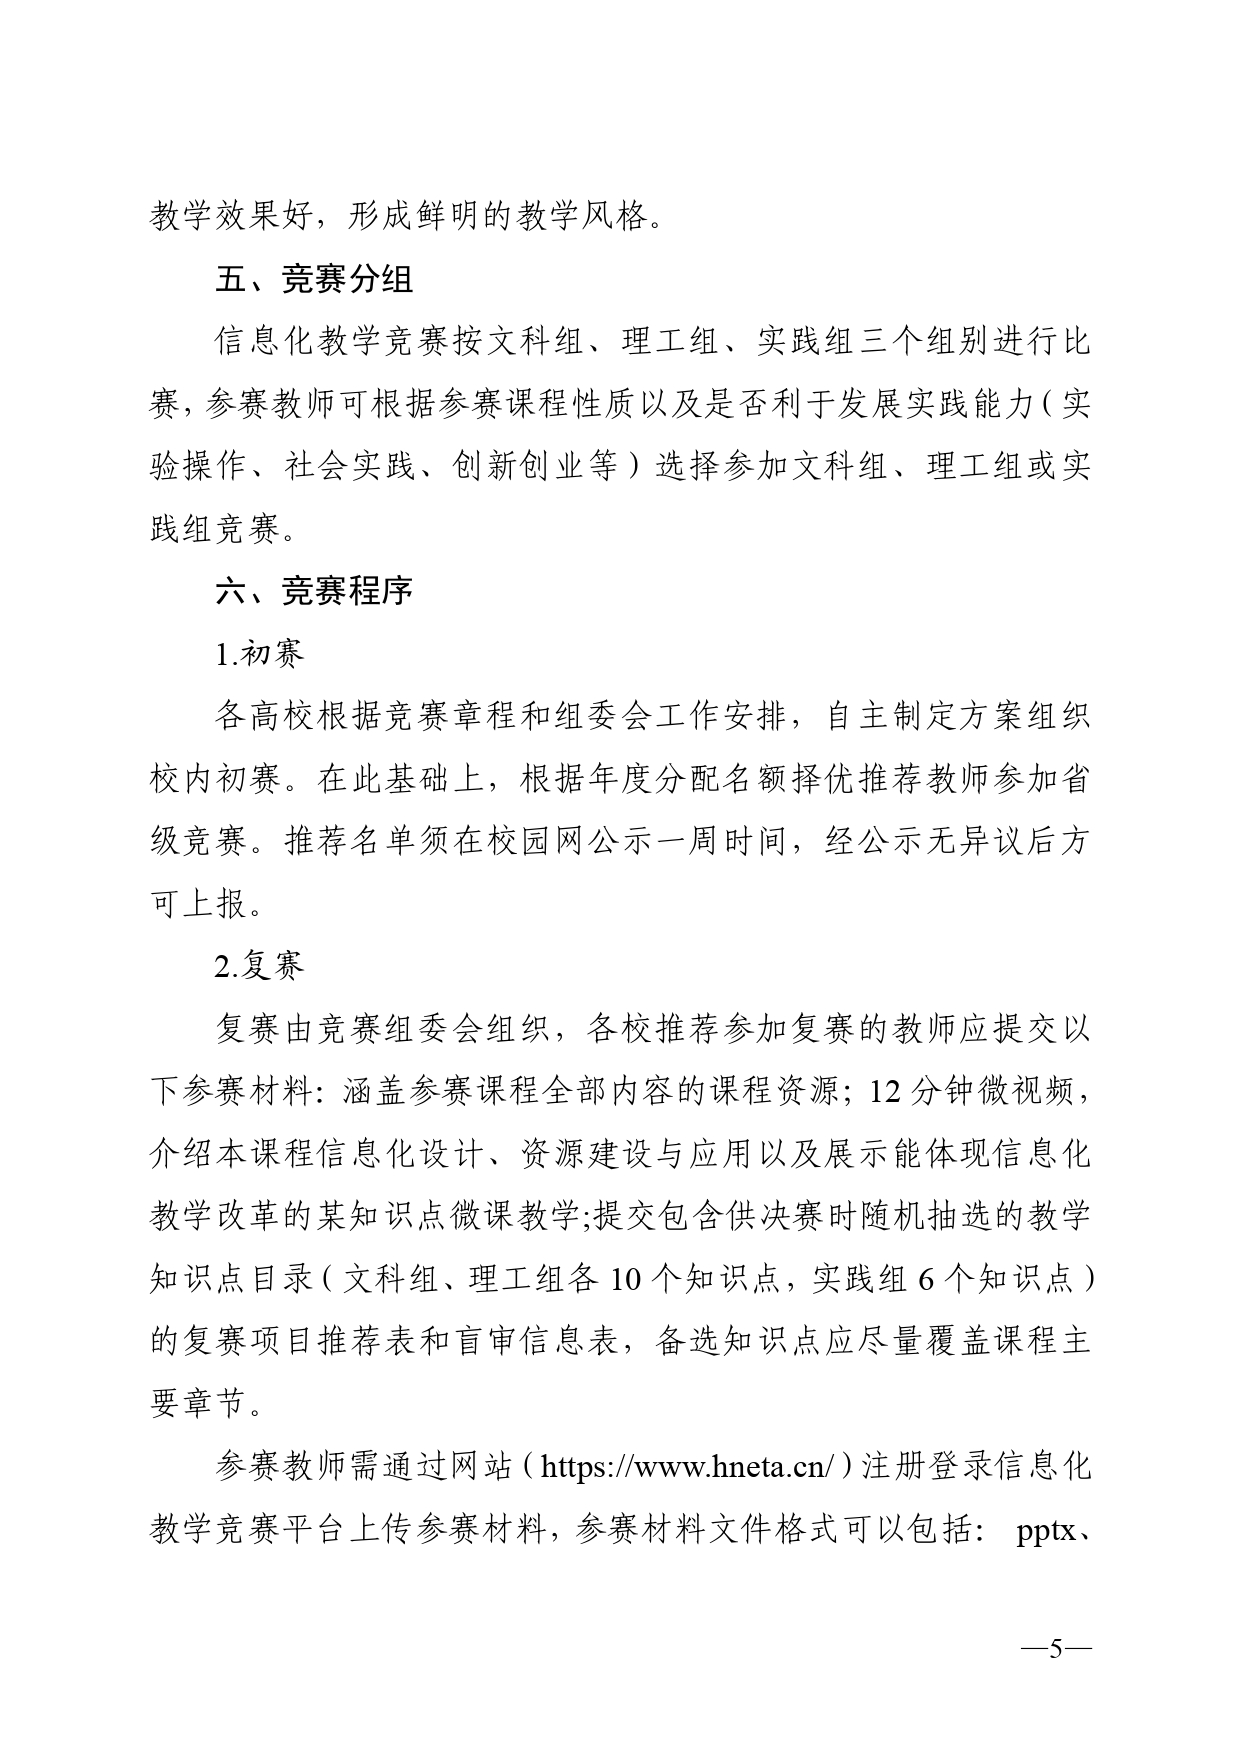 关于开展2023年湖南省普通高校教师信息化教学竞赛的通知正文(1)_page-0005.jpg